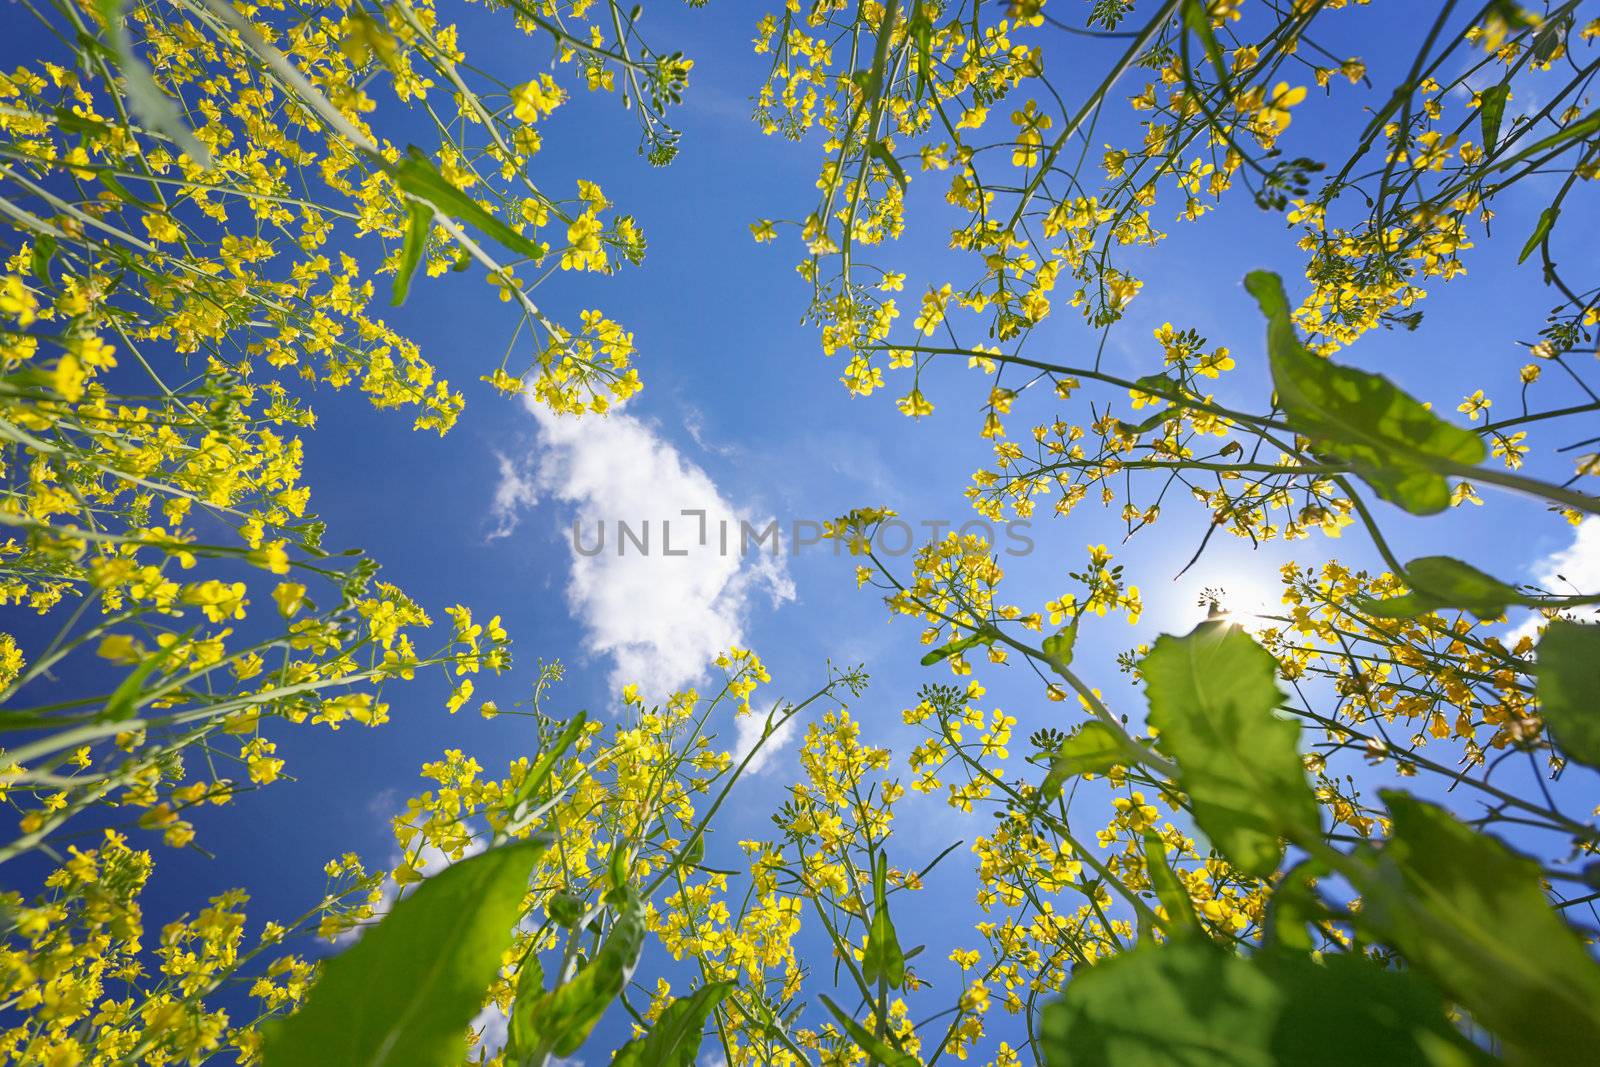 Sky framed by flowering oilseed rape by pzaxe